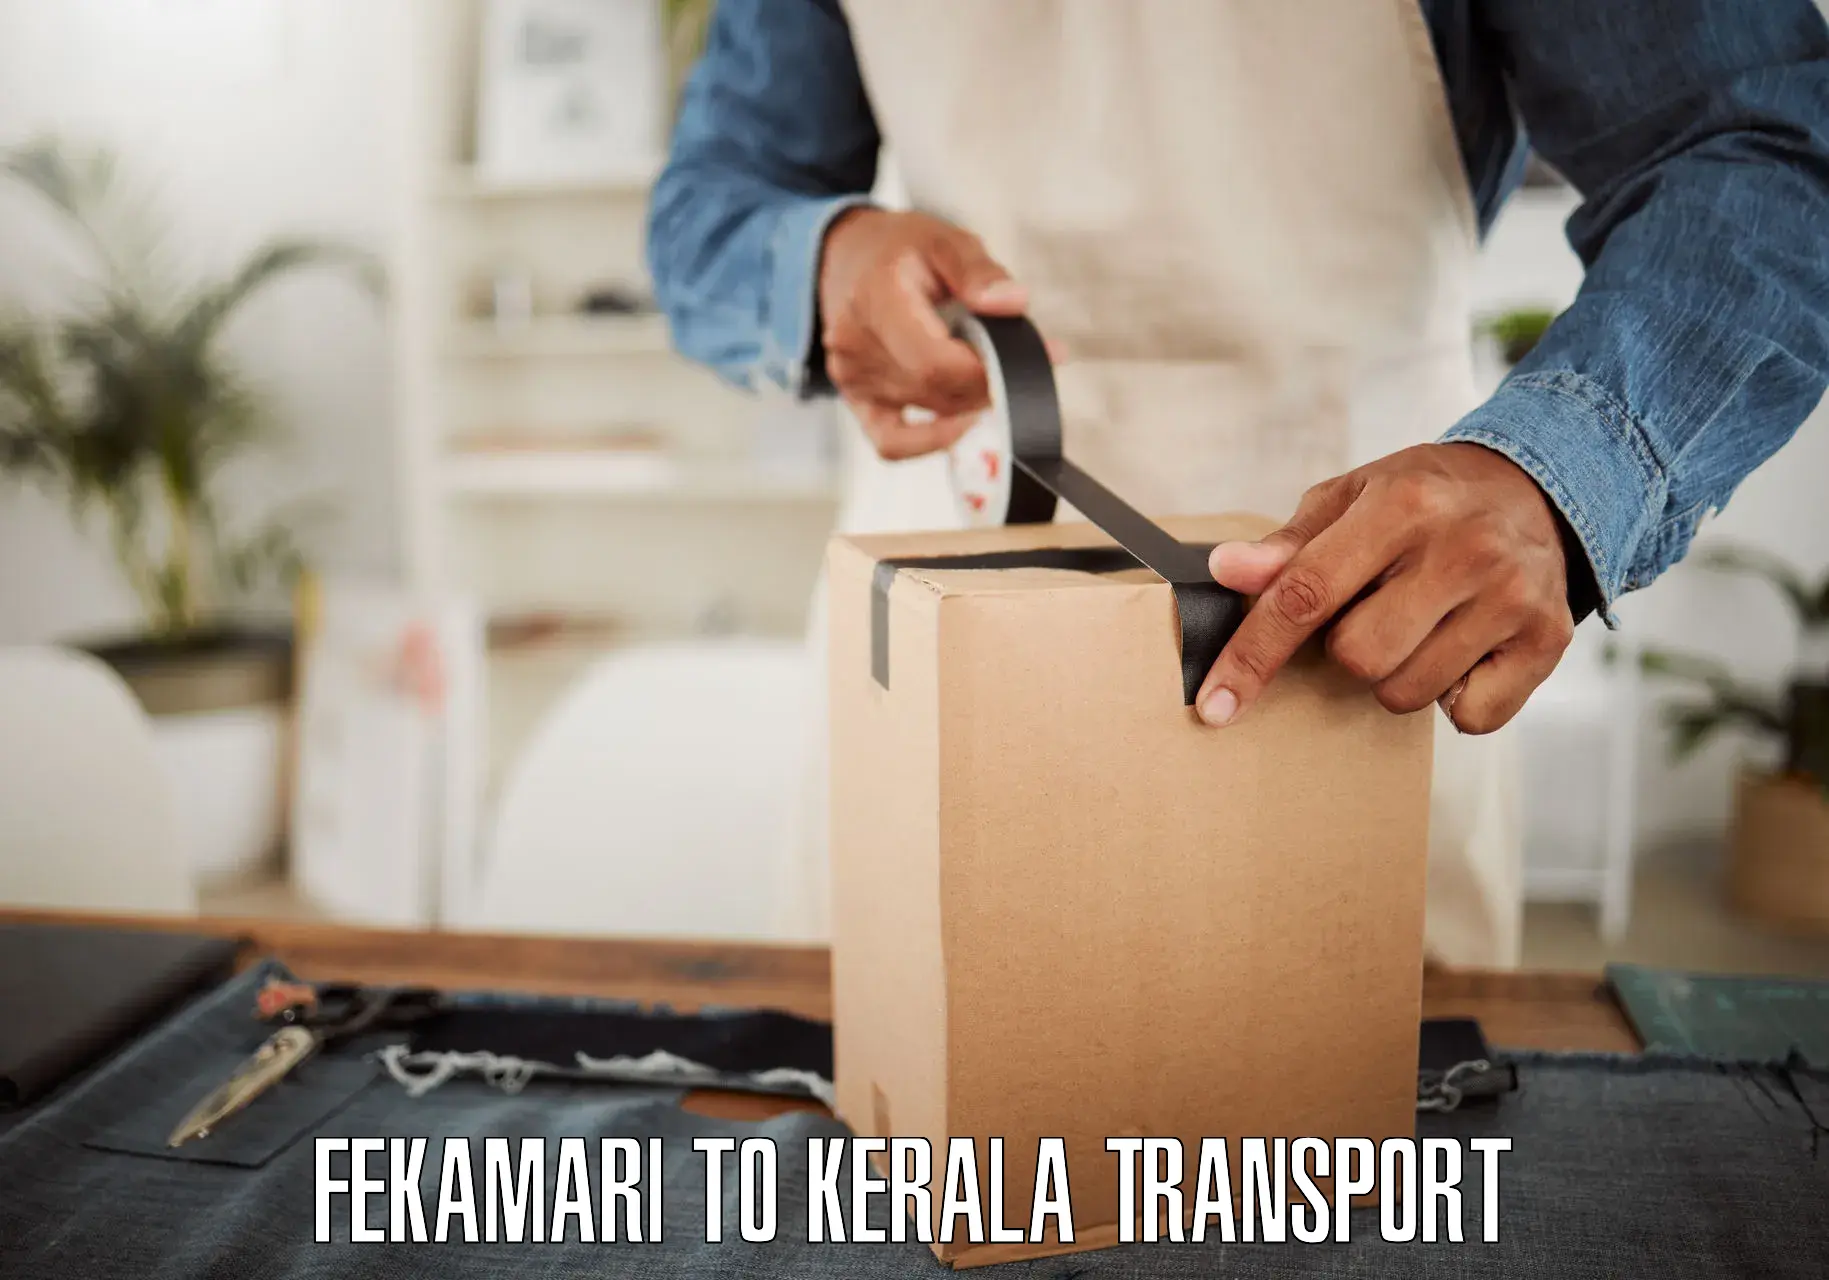 Transport in sharing Fekamari to Sankaramangalam